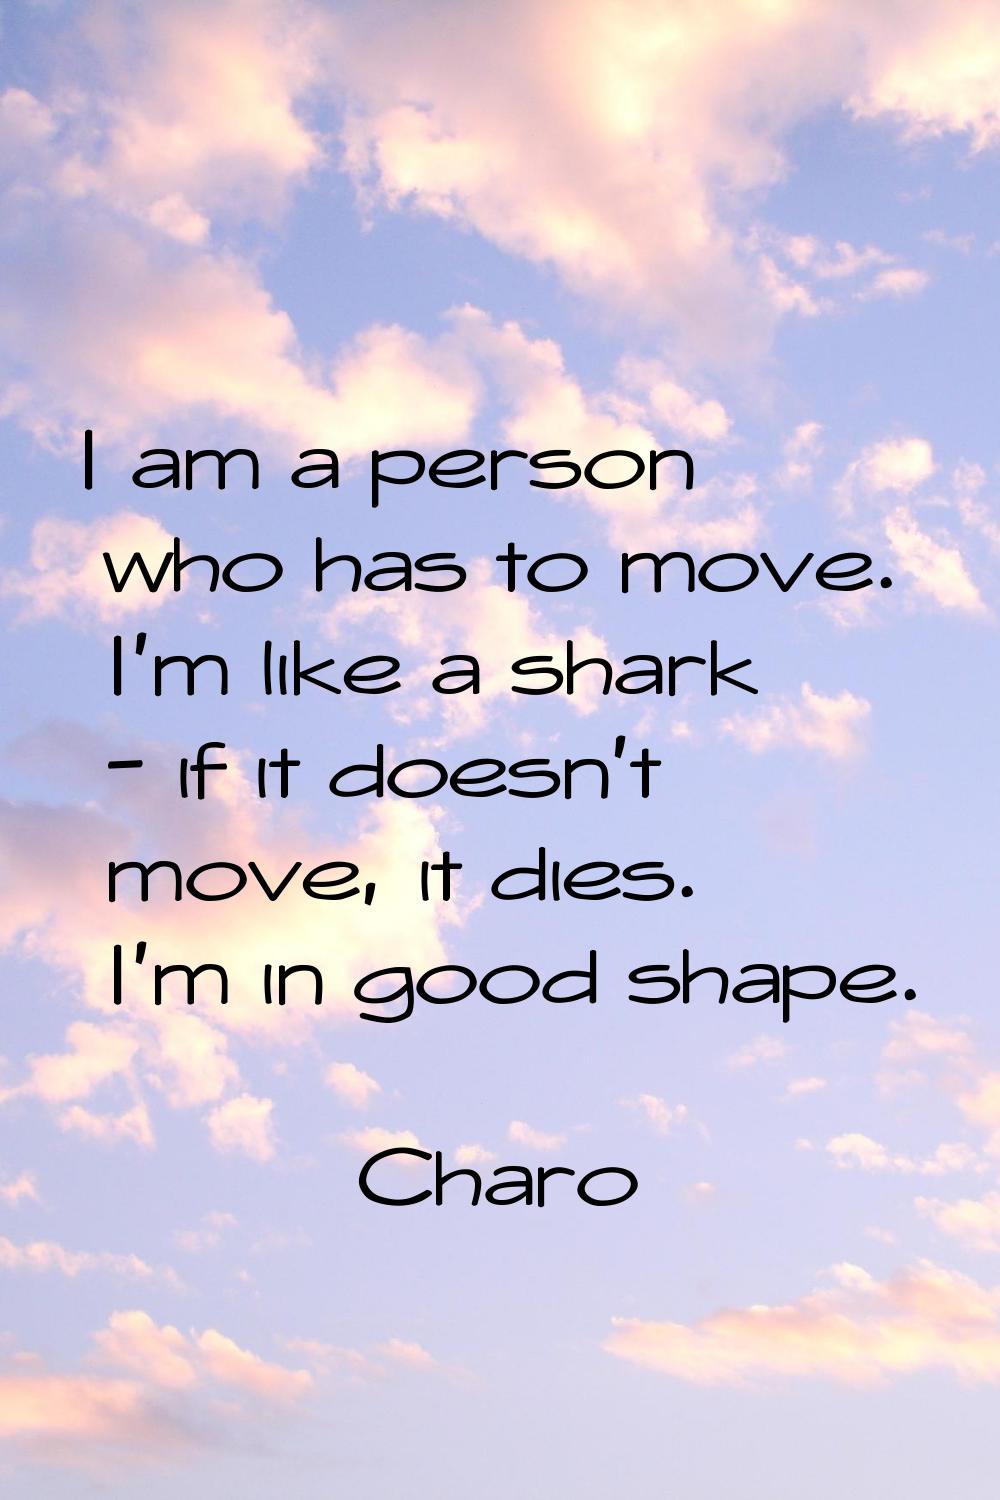 I am a person who has to move. I'm like a shark - if it doesn't move, it dies. I'm in good shape.